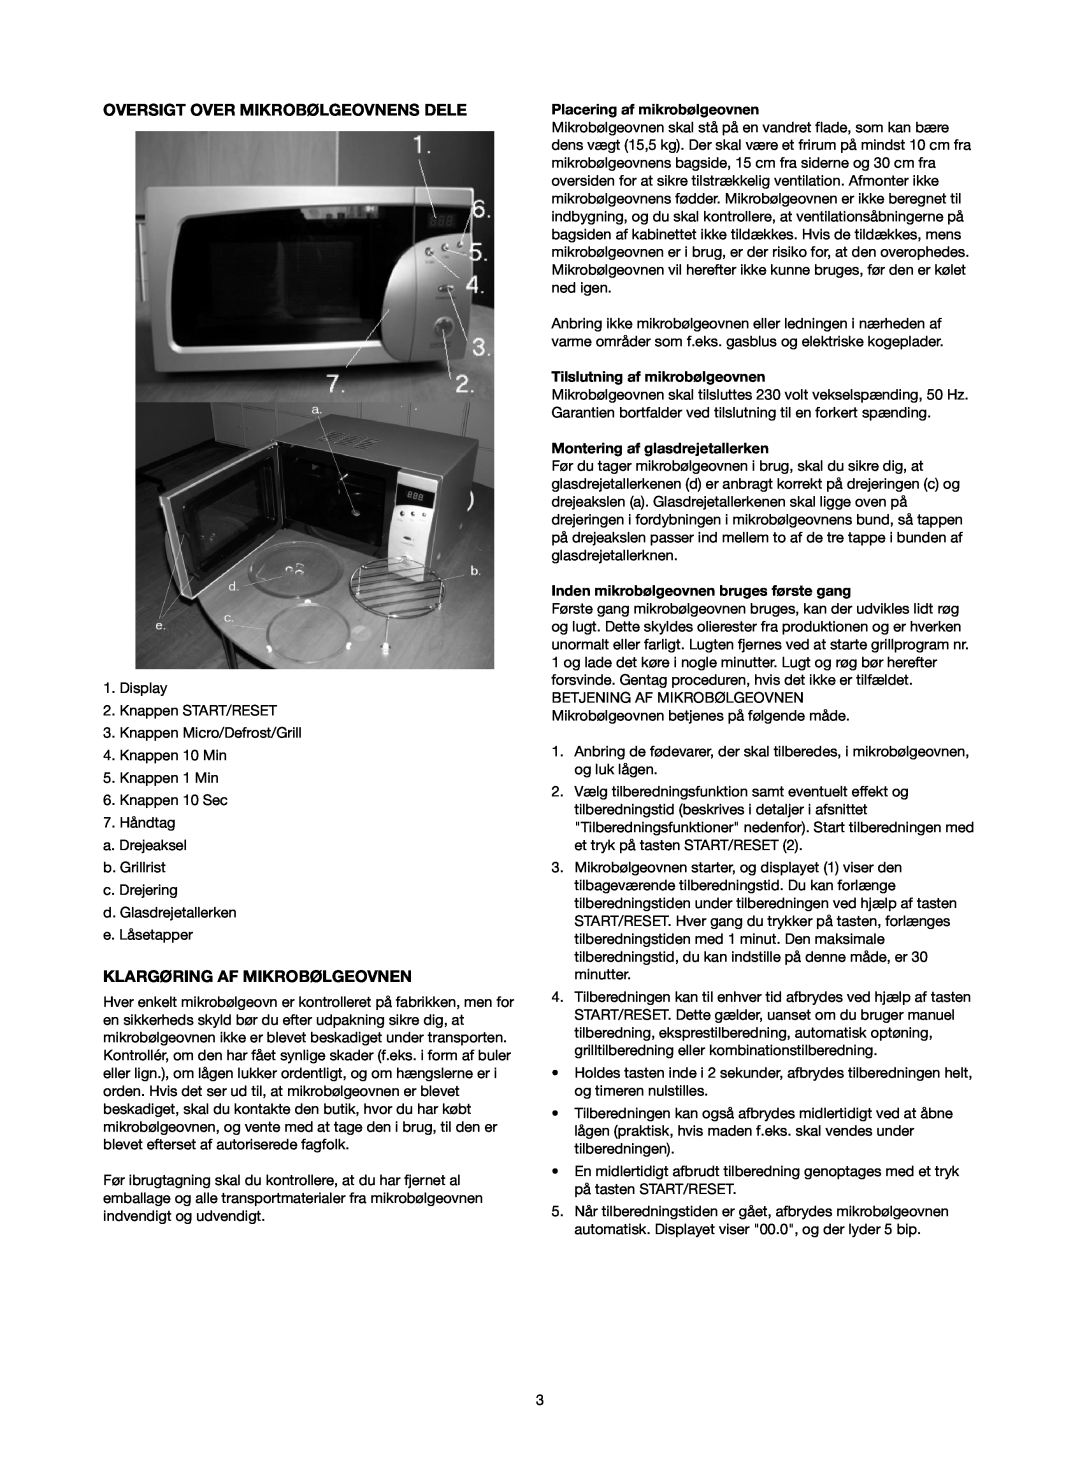 Melissa 753-084 manual Oversigt Over Mikrobølgeovnens Dele, Klargøring Af Mikrobølgeovnen, Placering af mikrobølgeovnen 